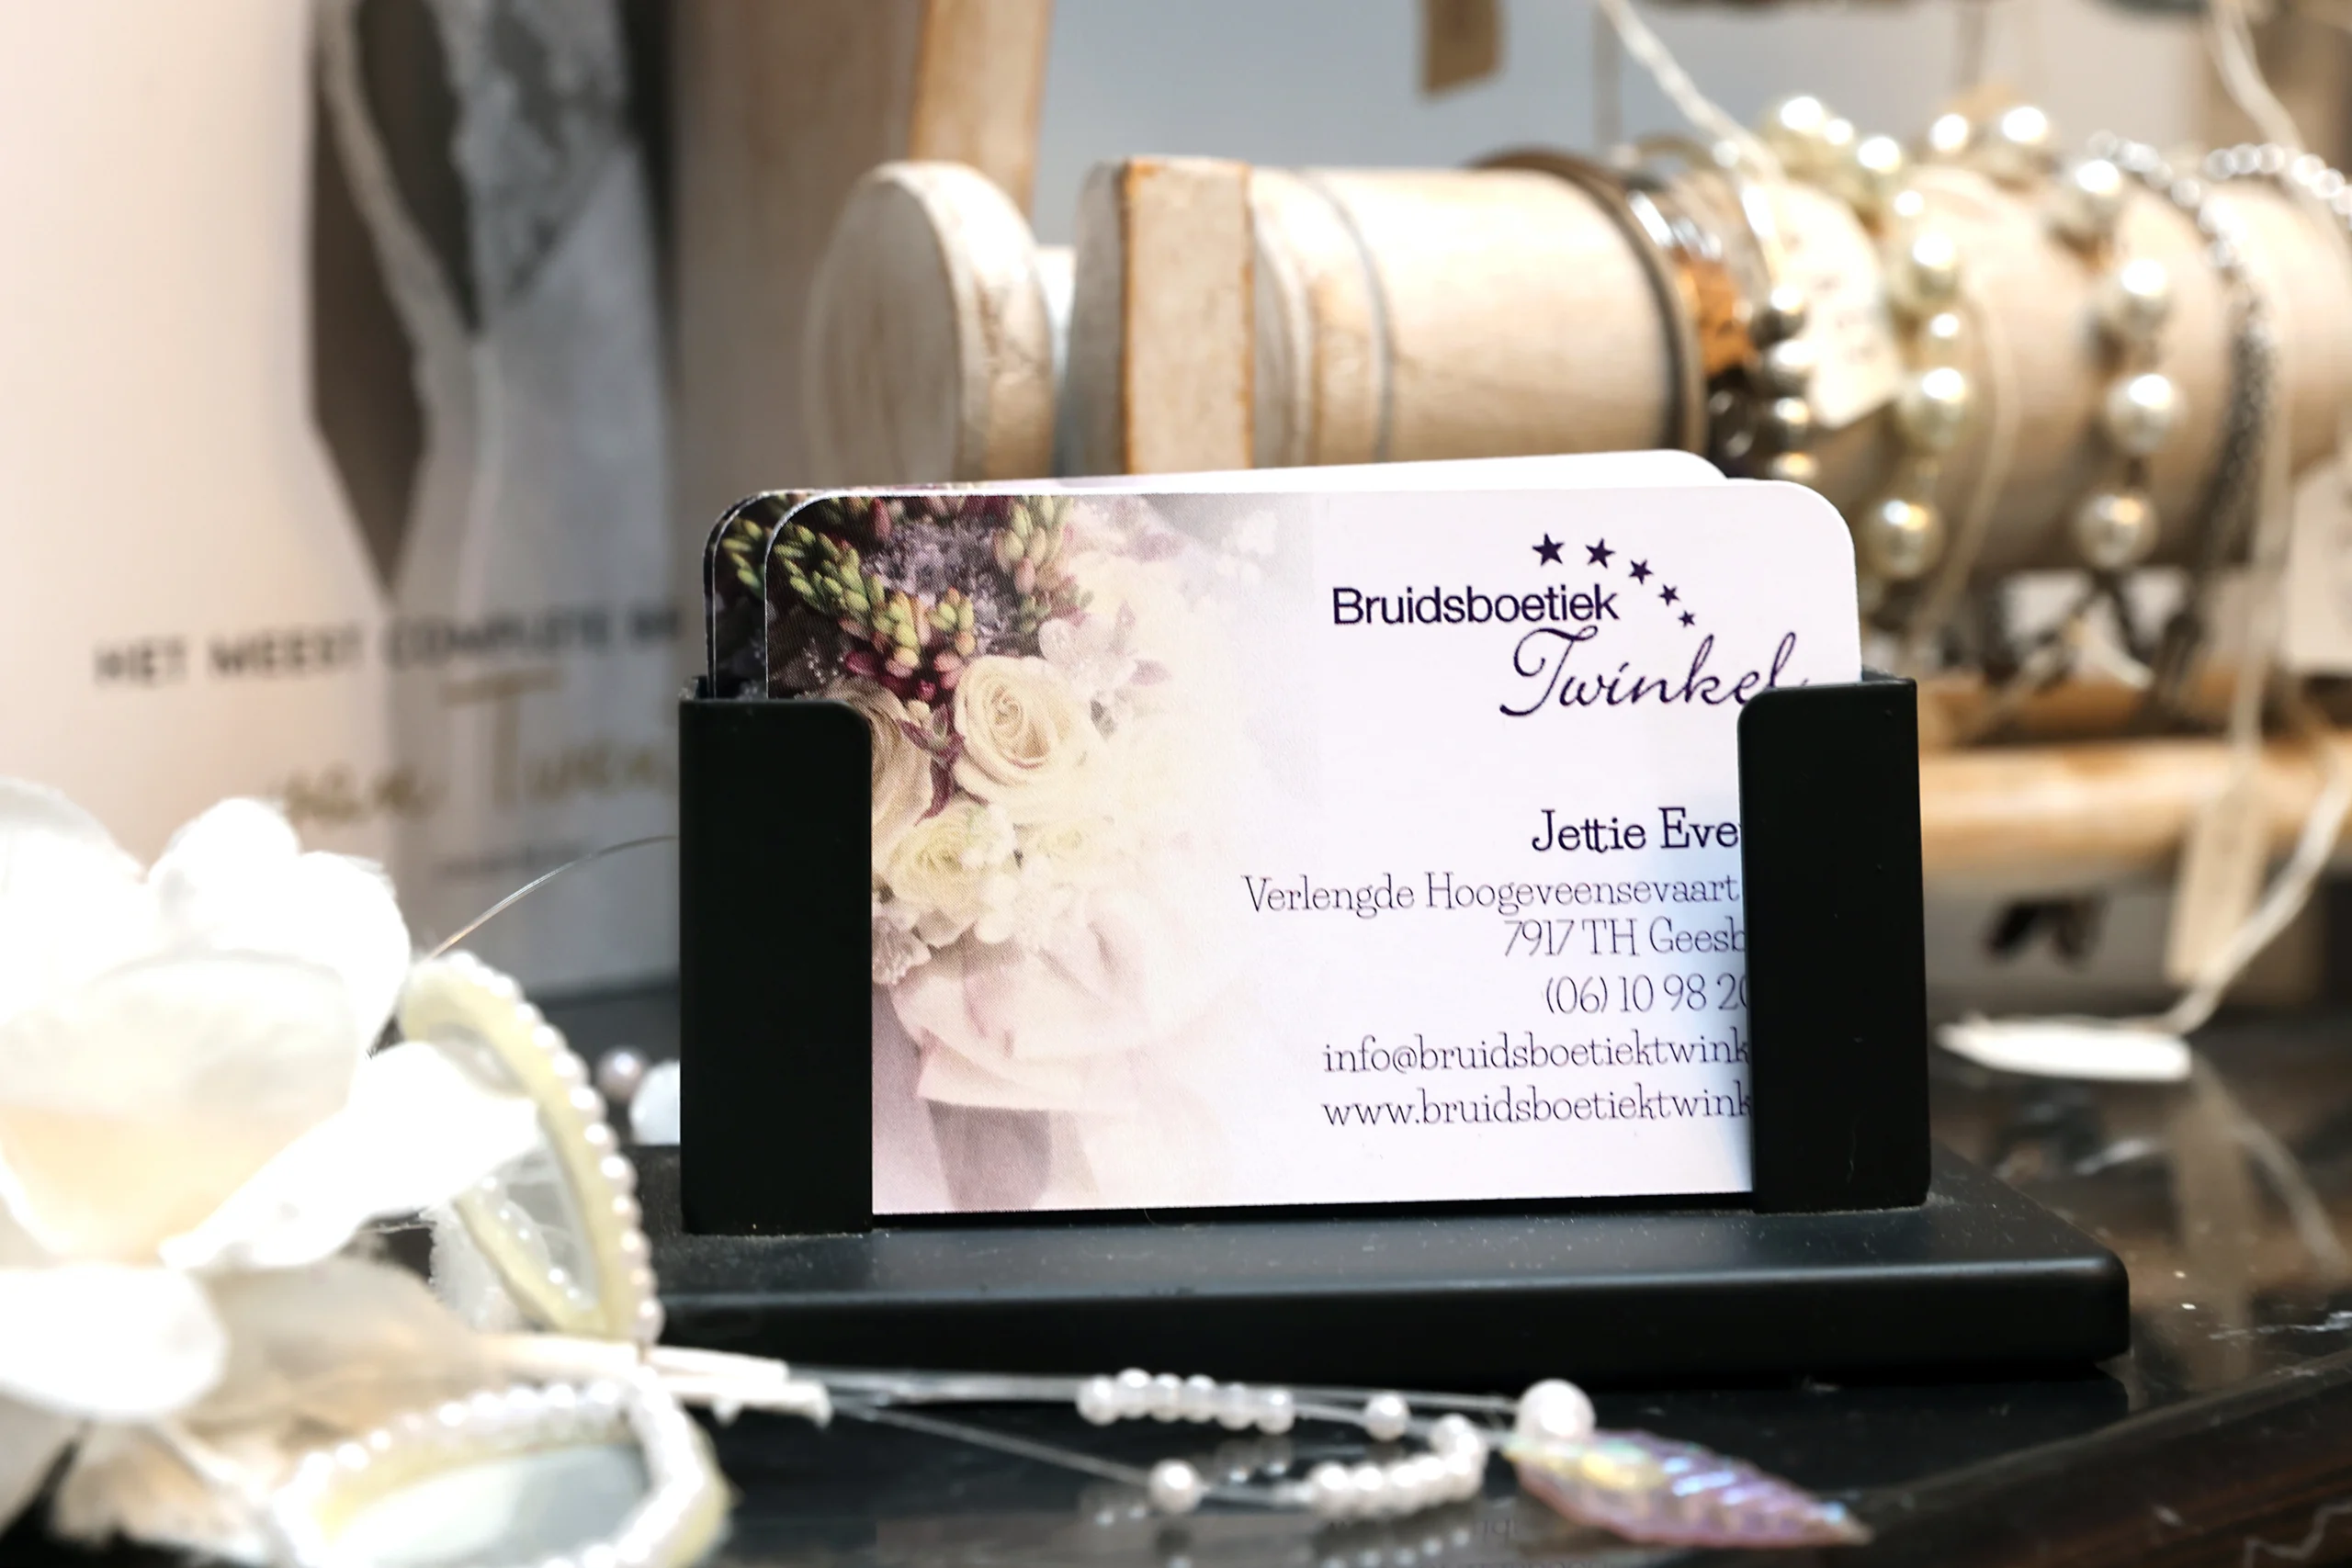 Visitekaartje van Bruidsboetiek Twinkel op een elegante display, omringd door bruidsaccessoires en sieraden, benadrukkend de aandacht voor detail en persoonlijke service.